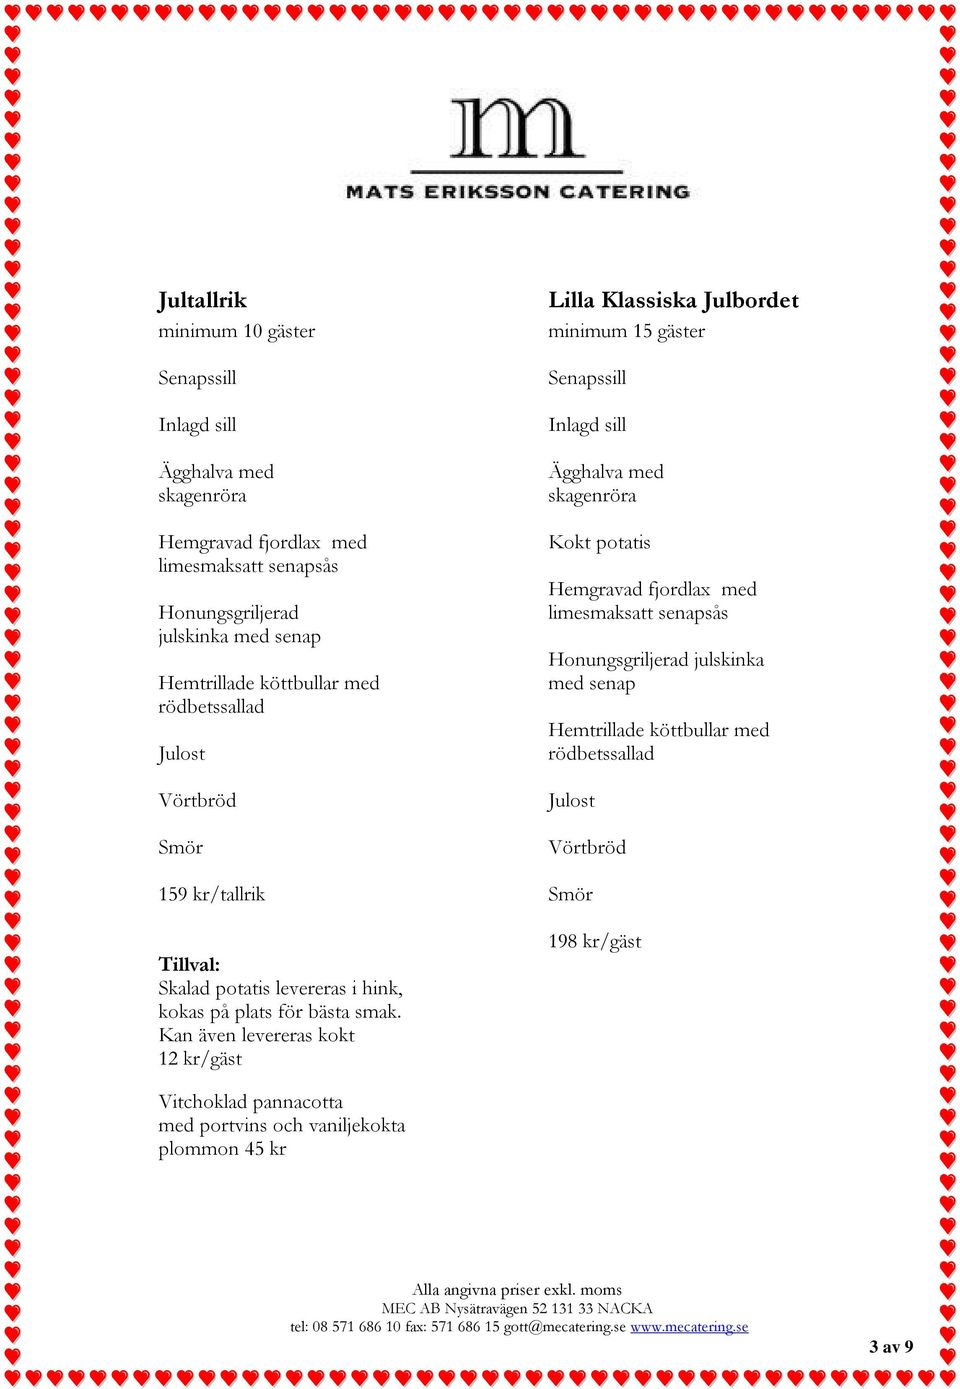 Kan även levereras kokt 12 kr/gäst Lilla Klassiska Julbordet minimum 15 gäster Ägghalva med skagenröra Kokt potatis Hemgravad fjordlax med limesmaksatt